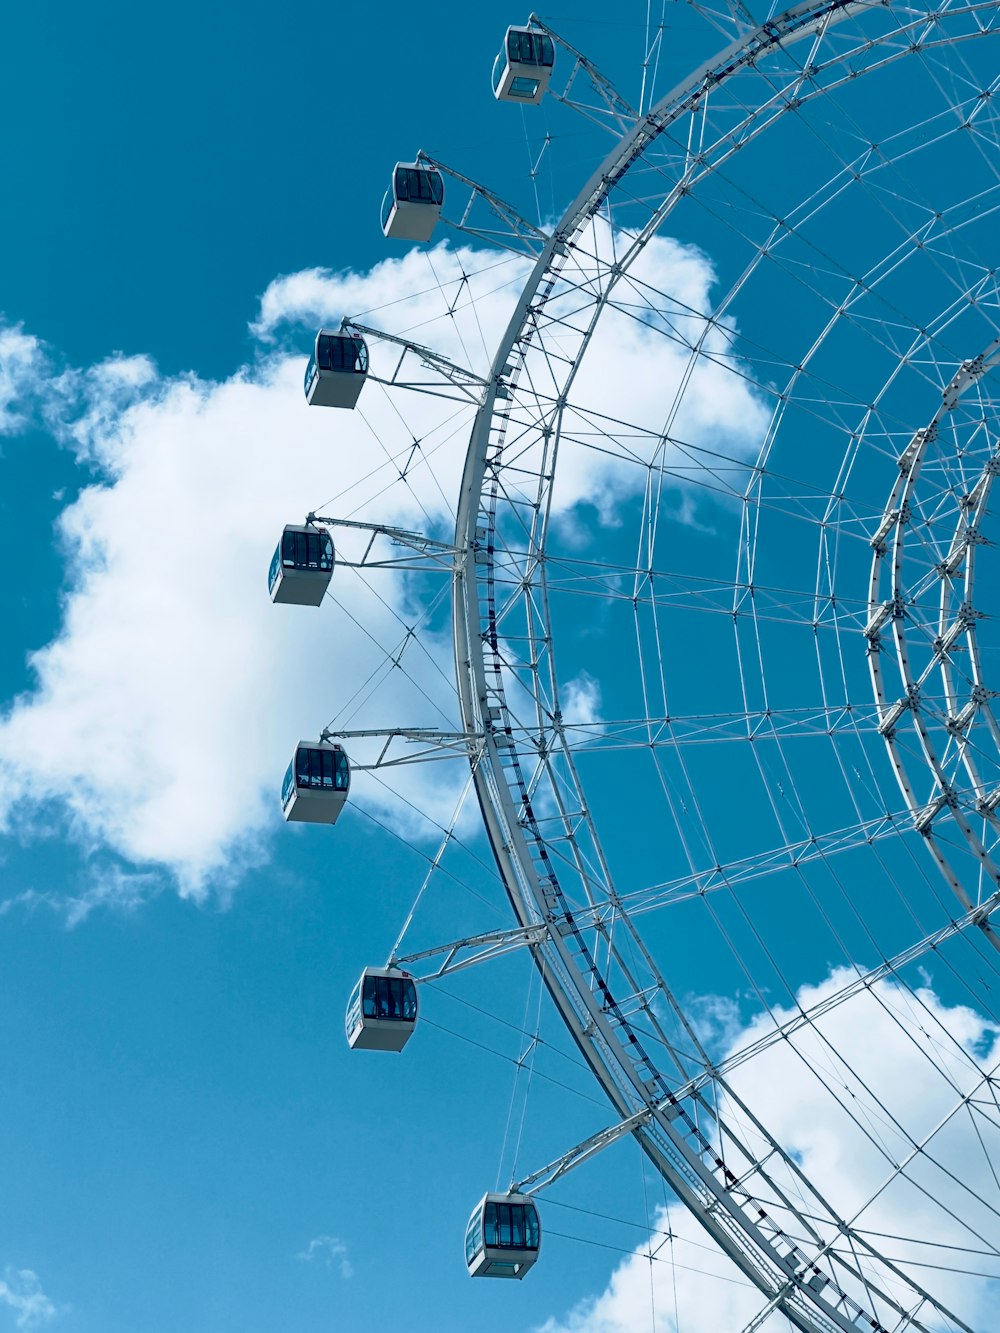 a ferris wheel is shown against a blue sky